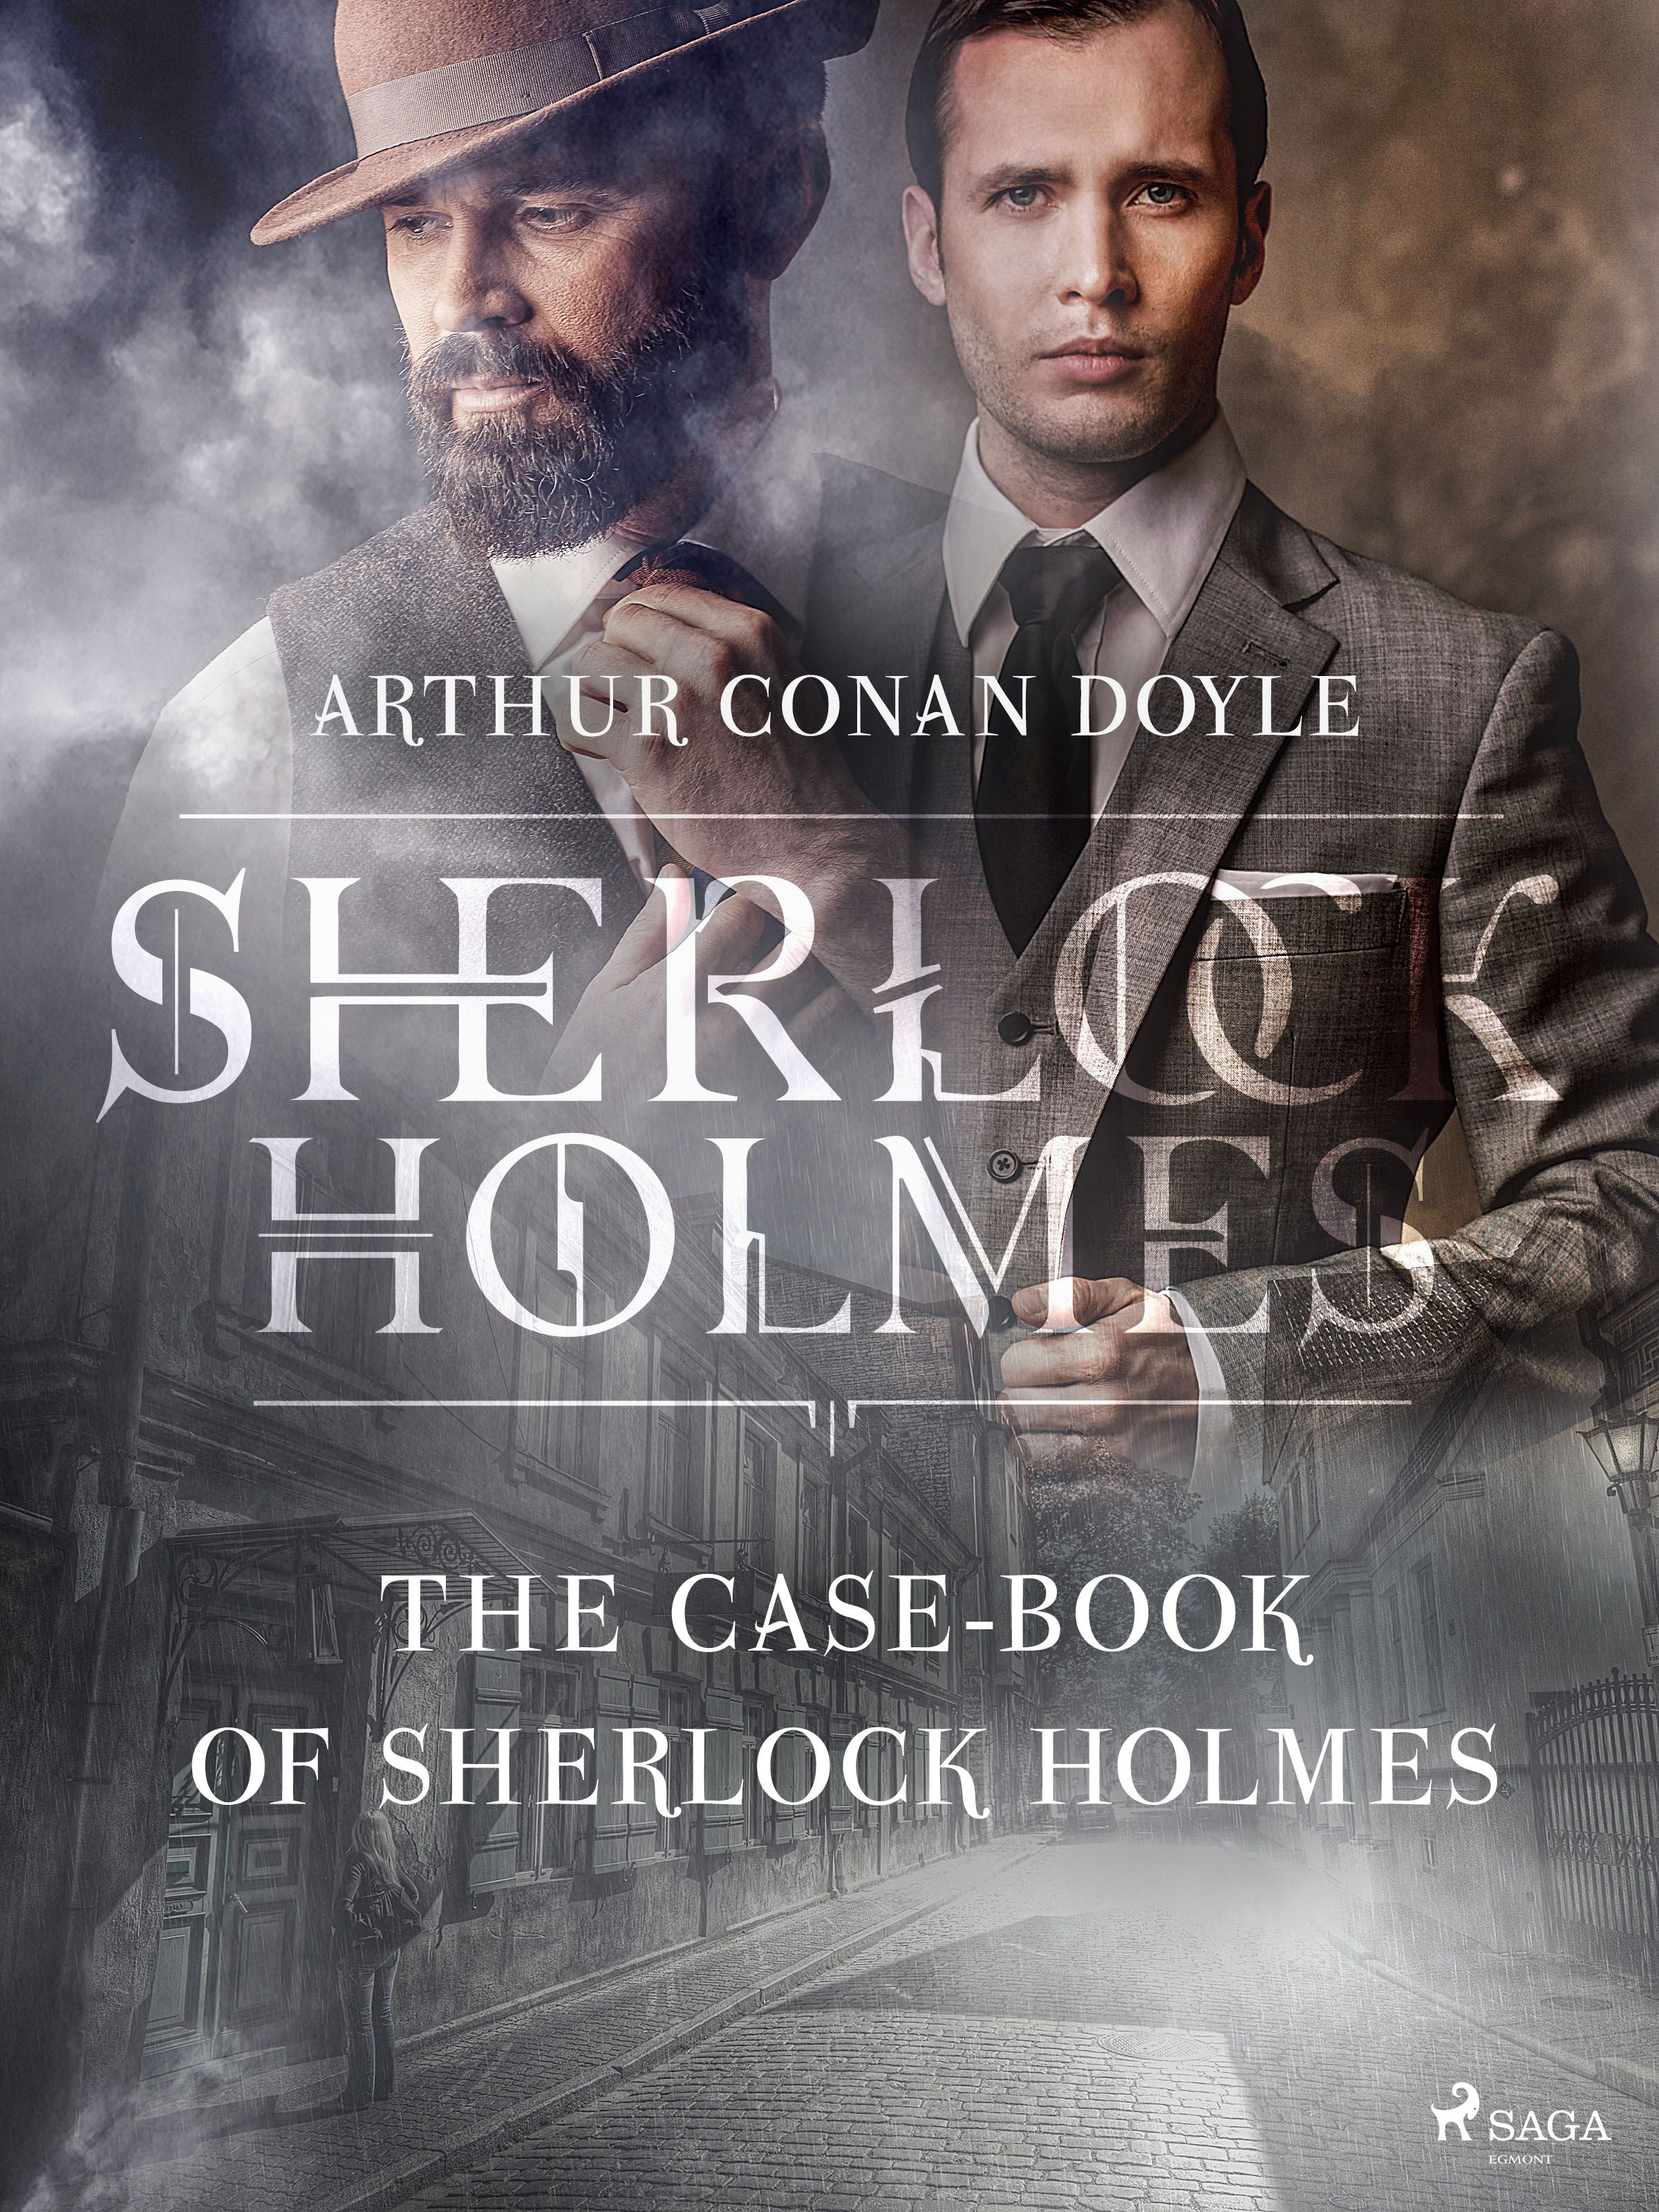 The Case-Book of Sherlock Holmes, eBook by Arthur Conan Doyle